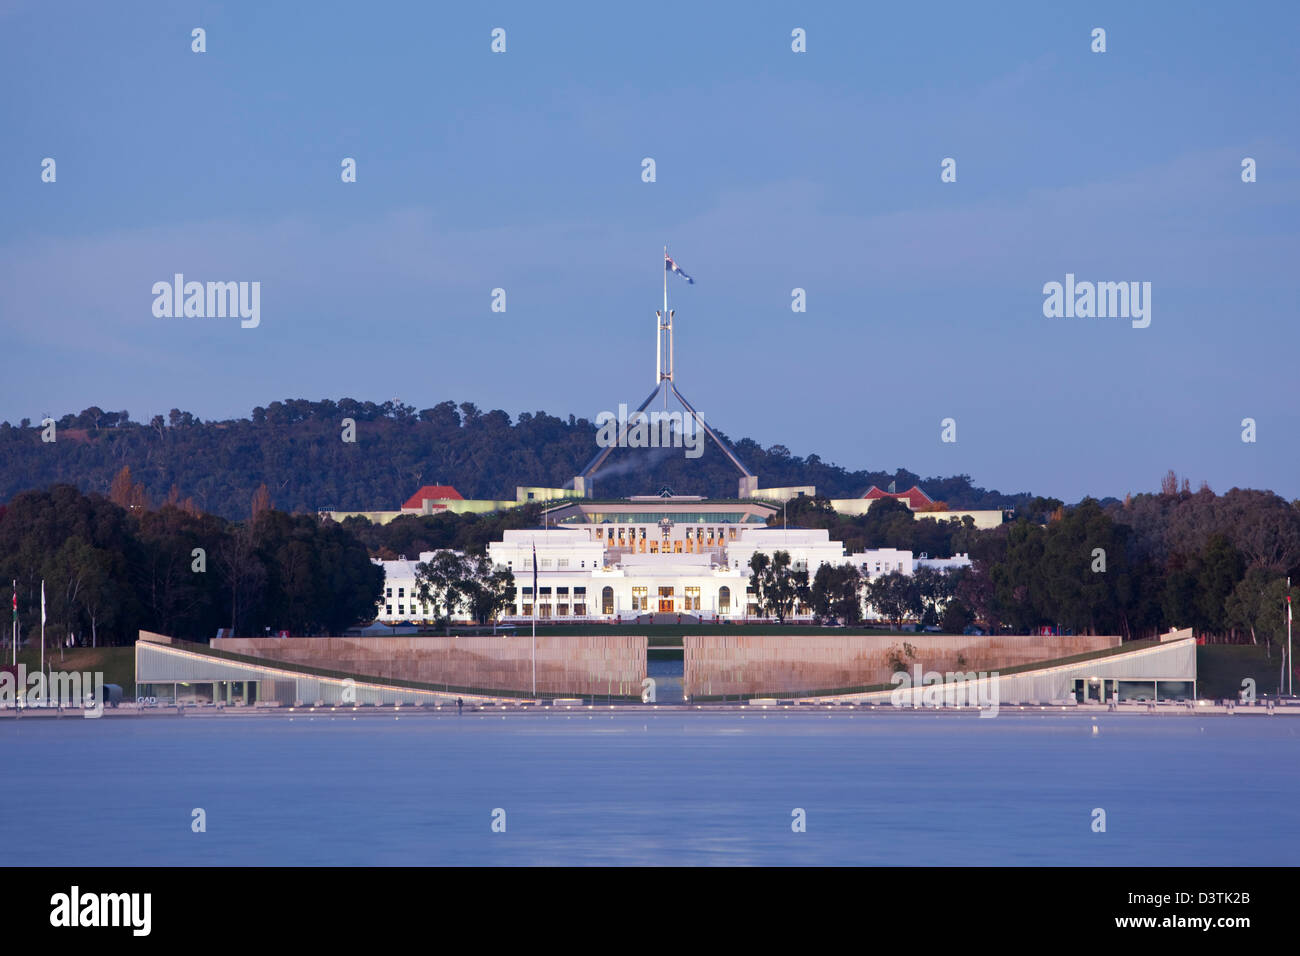 Vista sul Lago Burley Griffin per la Casa del Parlamento, al crepuscolo. Canberra, Australian Capital Territory (ACT), Australia Foto Stock